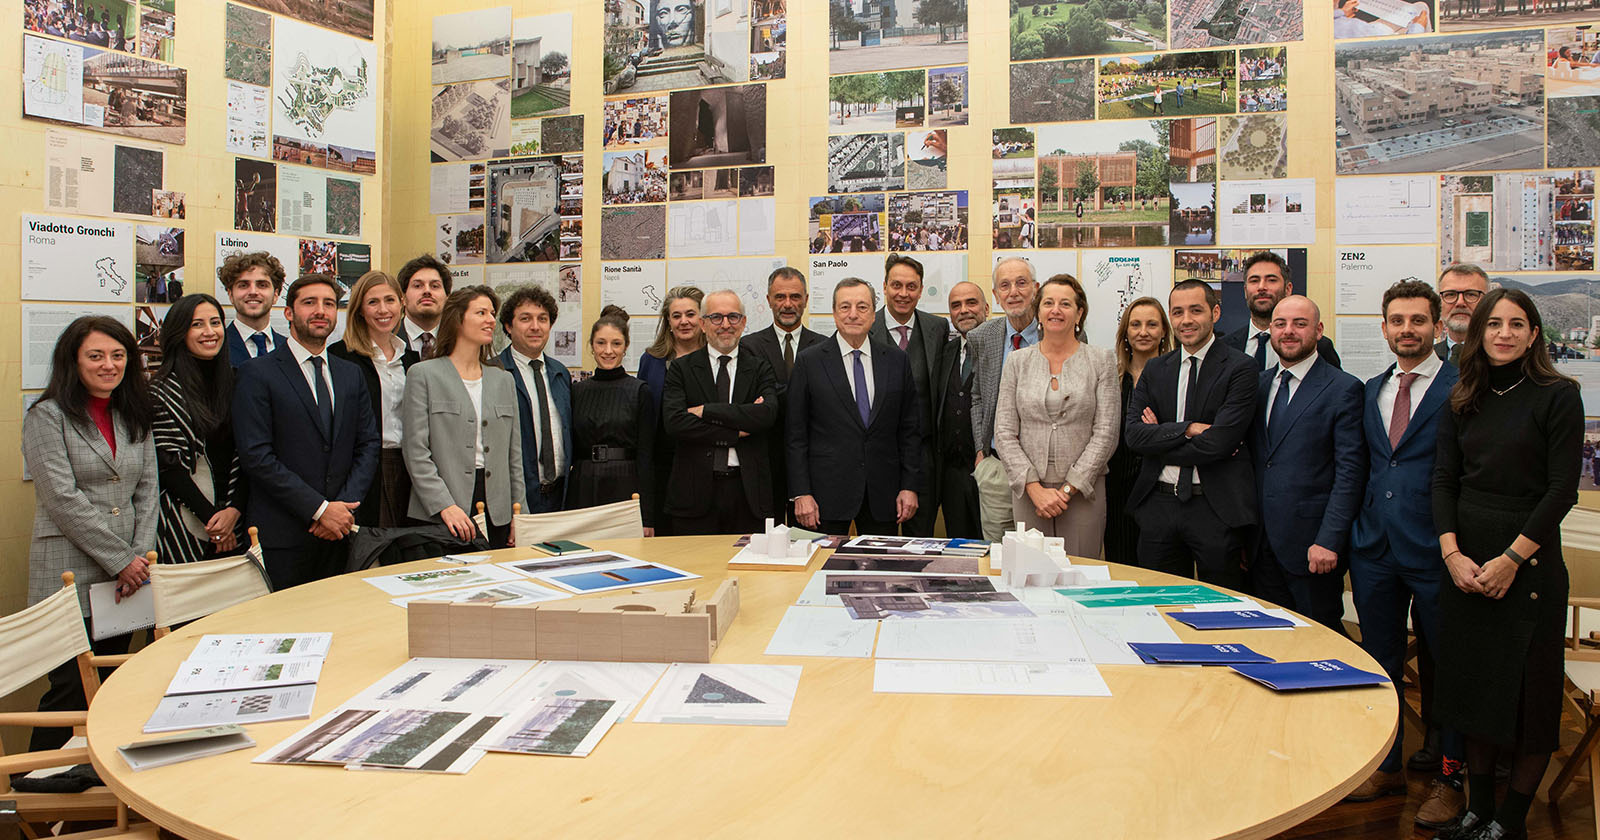 G124 Renzo Piano: sguardo sui cantieri in corso e prossimi all'apertura a Bari, Napoli e Rovigo